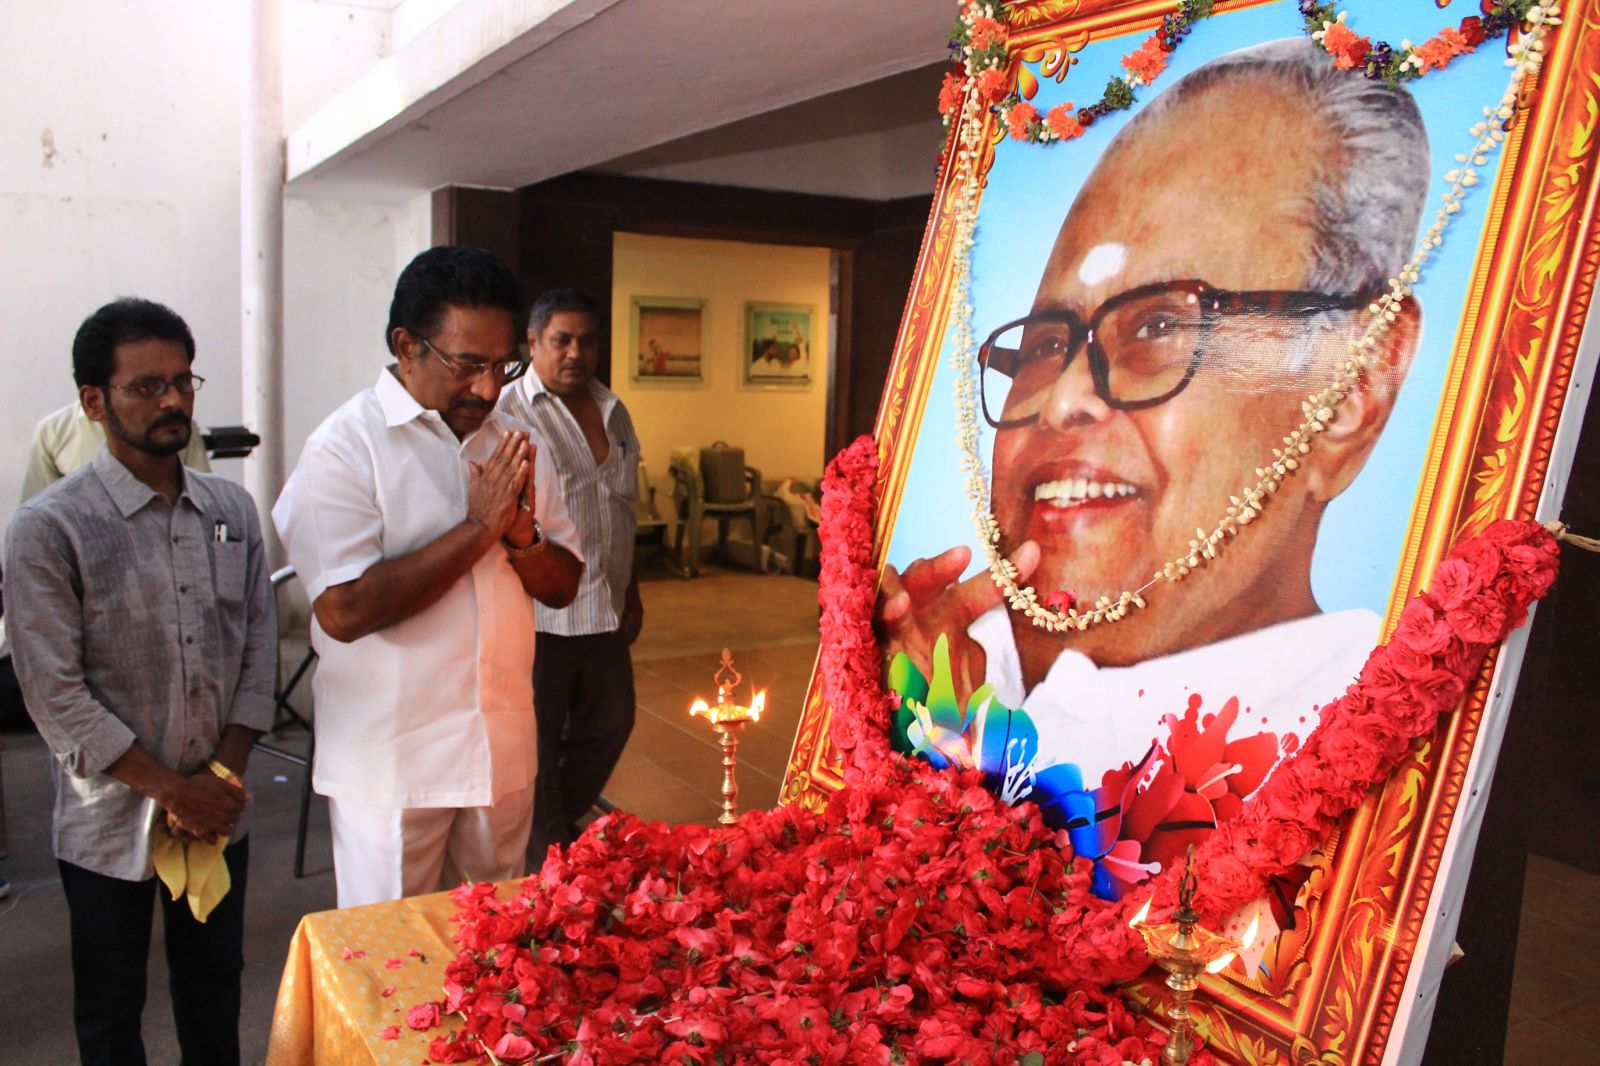 Dadasaheb Phalke Padma Shri Dr K. Balachander 87th Birthday Celebration at AVM Theatre Photos (2)